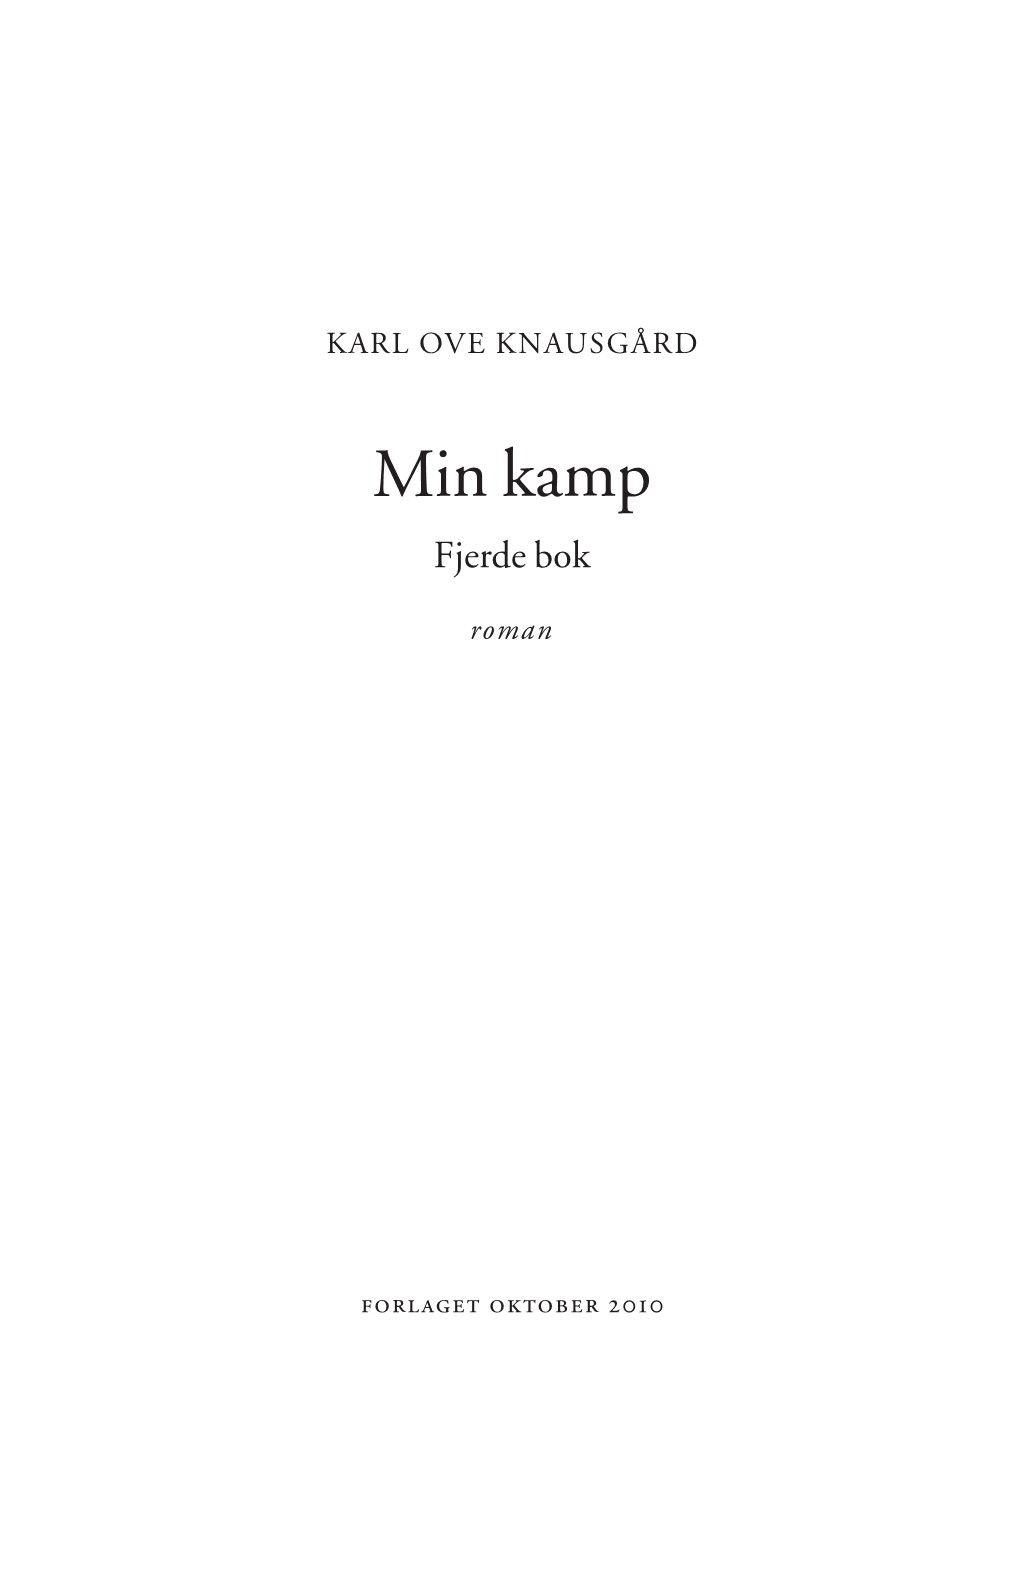 Min Kamp 4:En Tid for Alt 04-02-10 15:09 Side 3